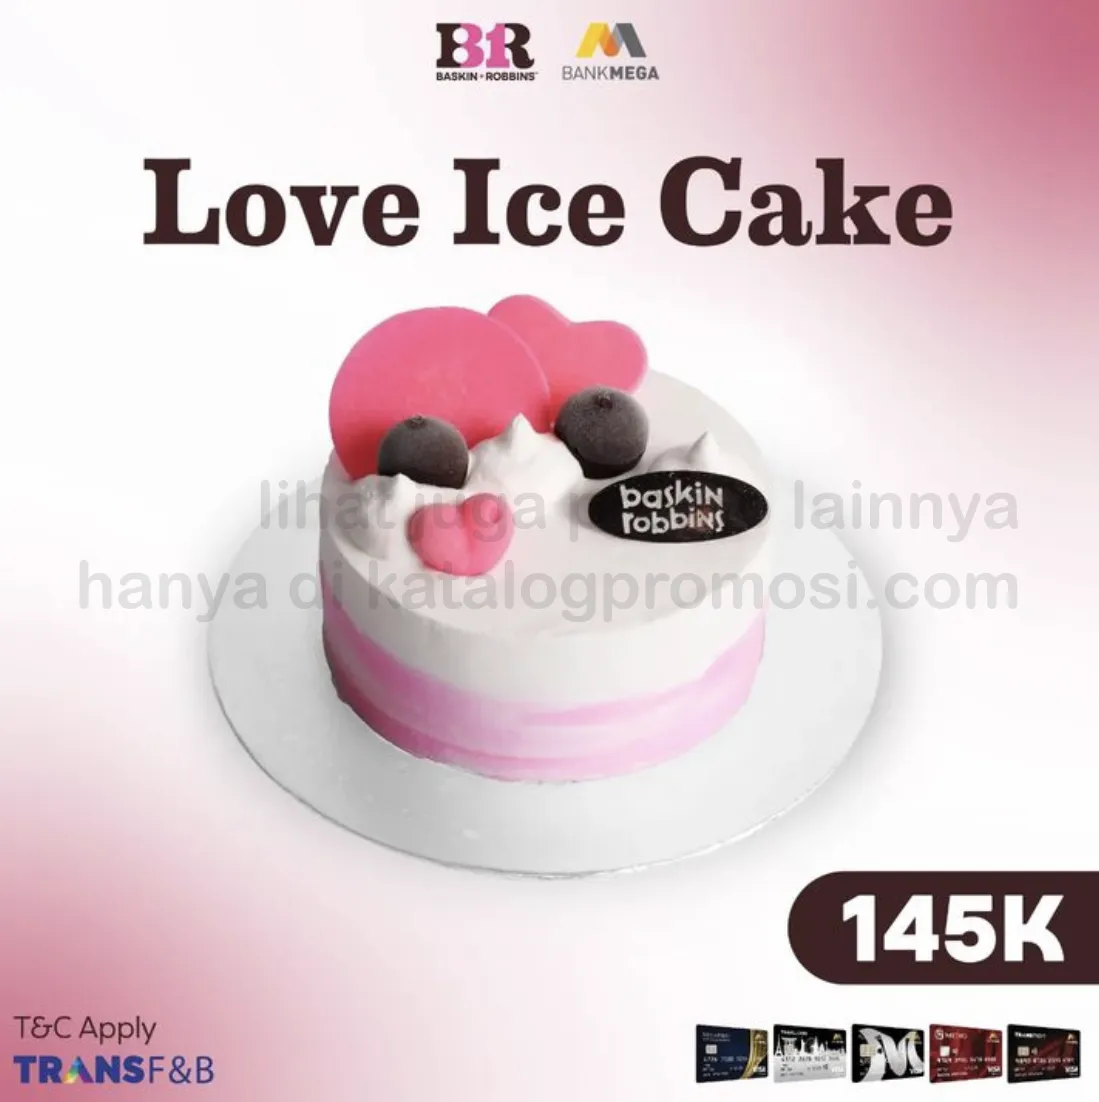 Promo BASKIN ROBBINS Love Ice Cake Harga Spesial Rp. 145RIBU + DISKON 30% dengan Allo Prime 